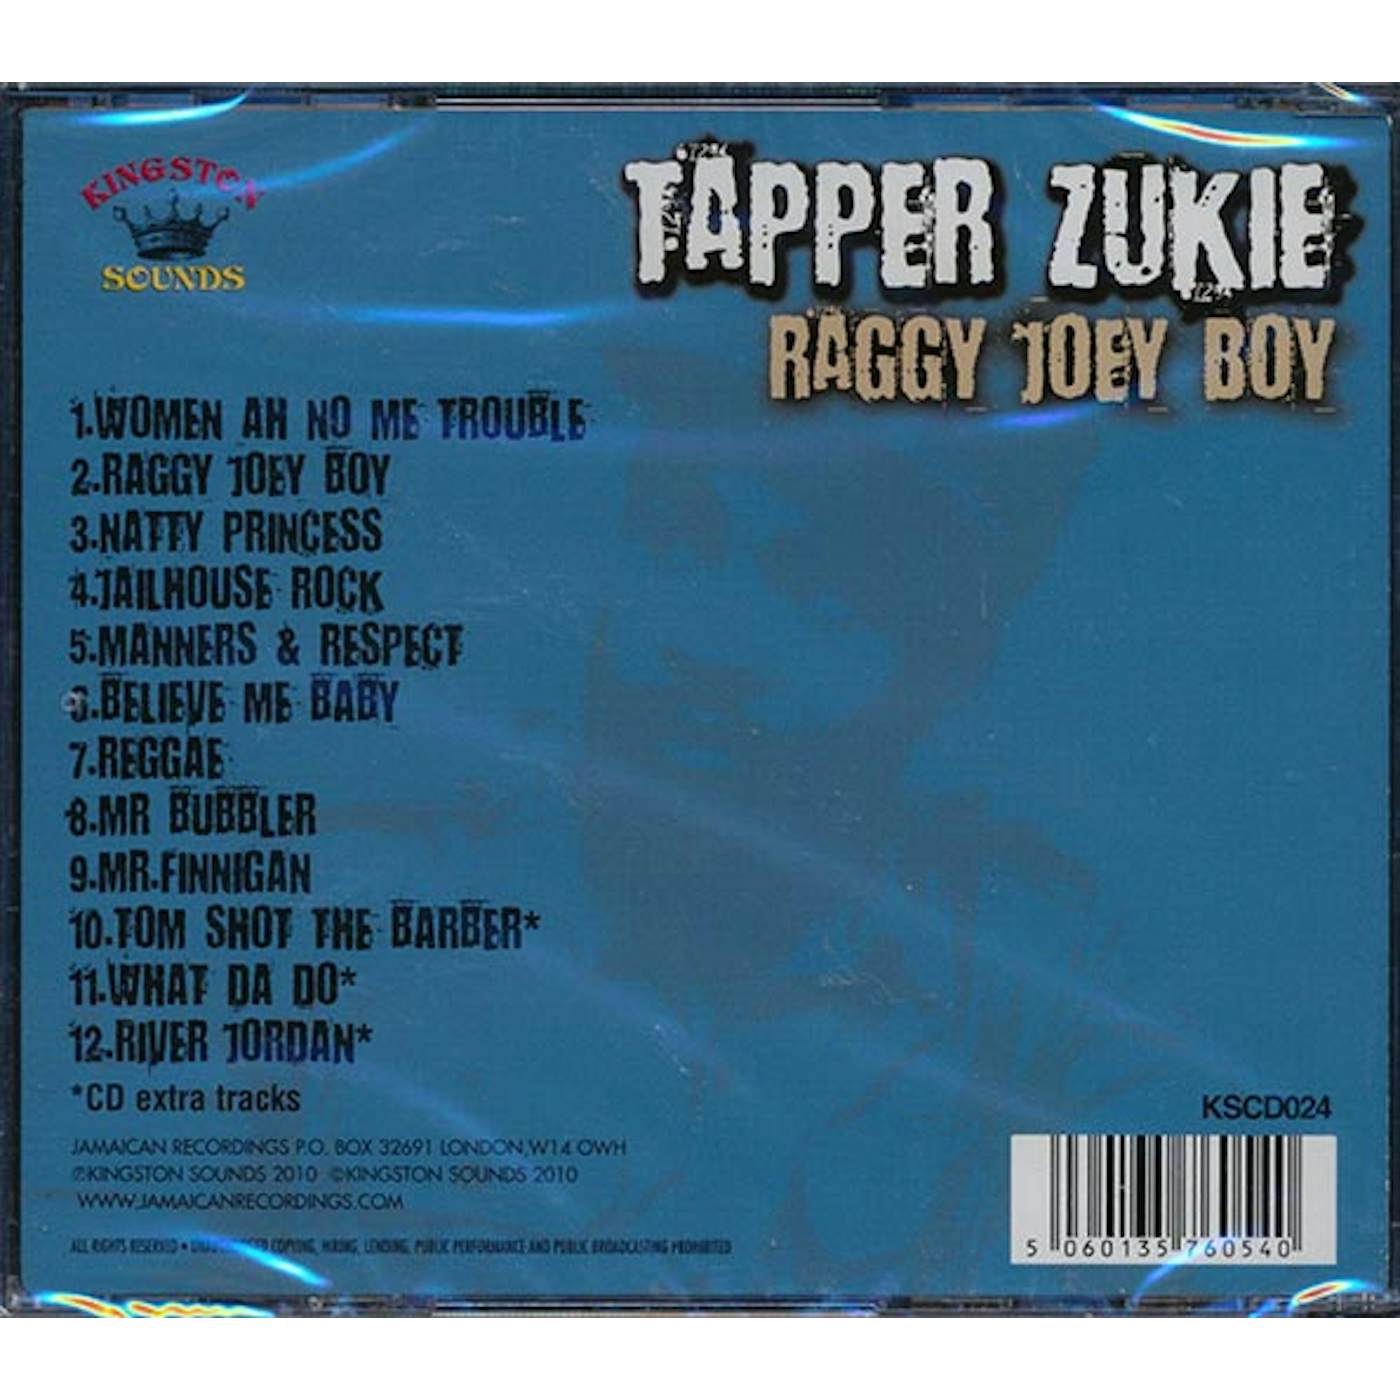 Tappa Zukie  CD -  Raggy Joey Boy